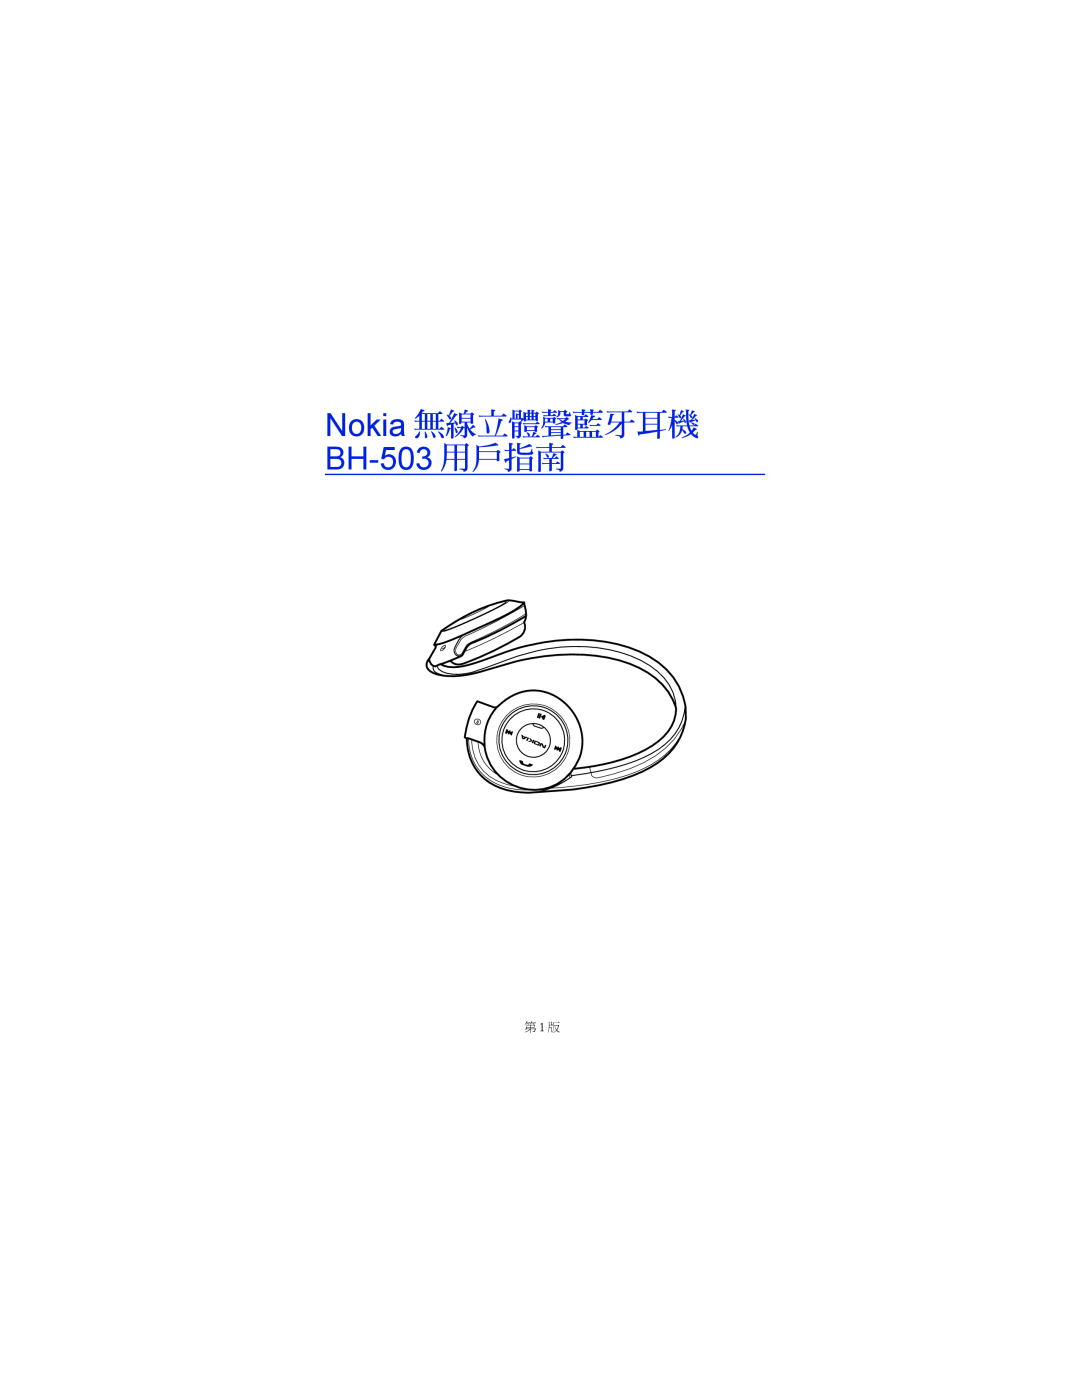 Nokia manual Nokia 無線立體聲藍牙耳機, BH-503 用戶指南, 第 1 版 